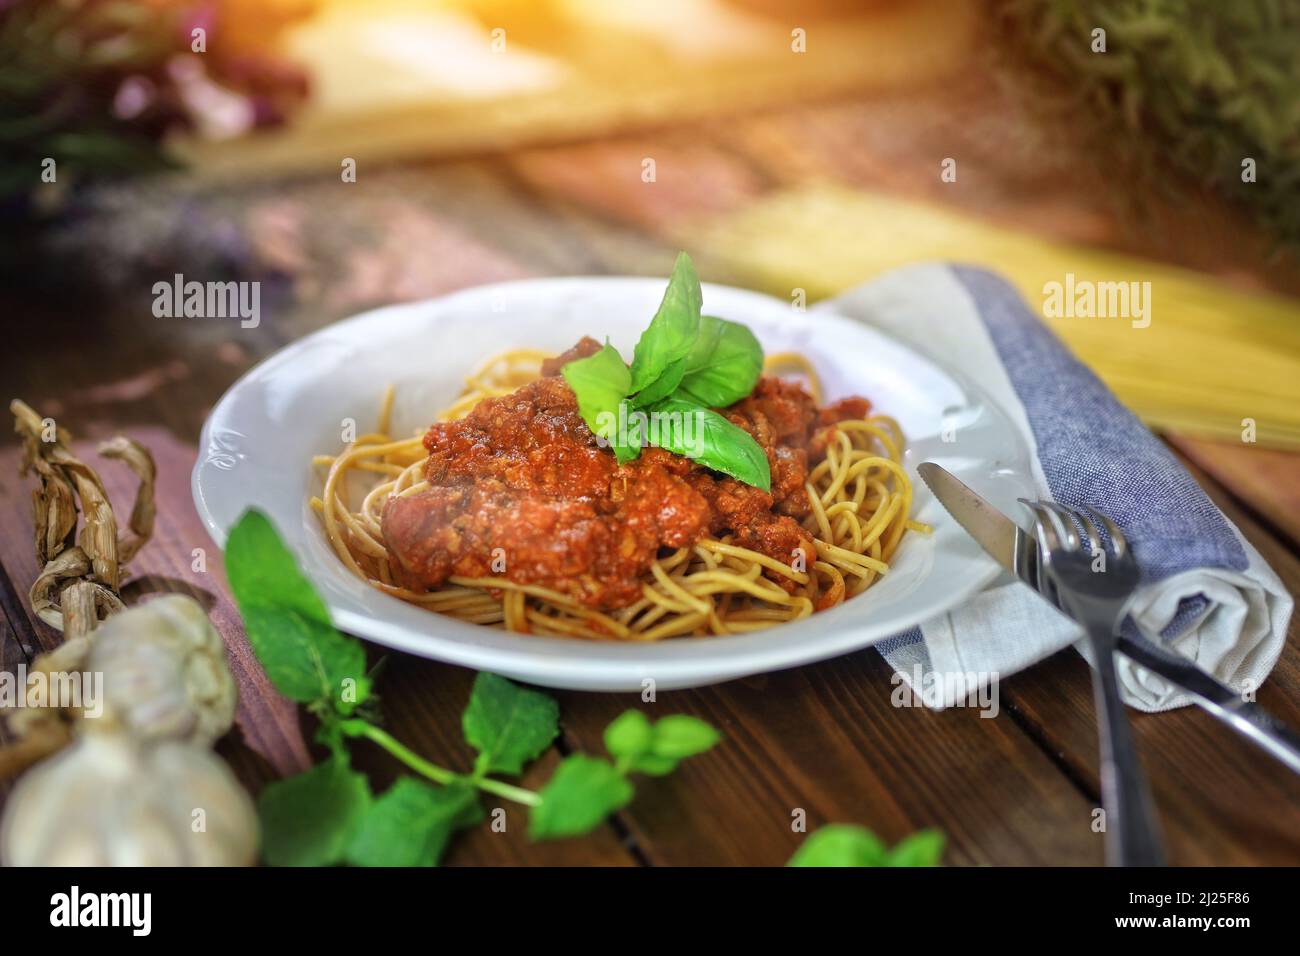 delicious Italian dish, spaghetti bolognese deliciously served Stock Photo